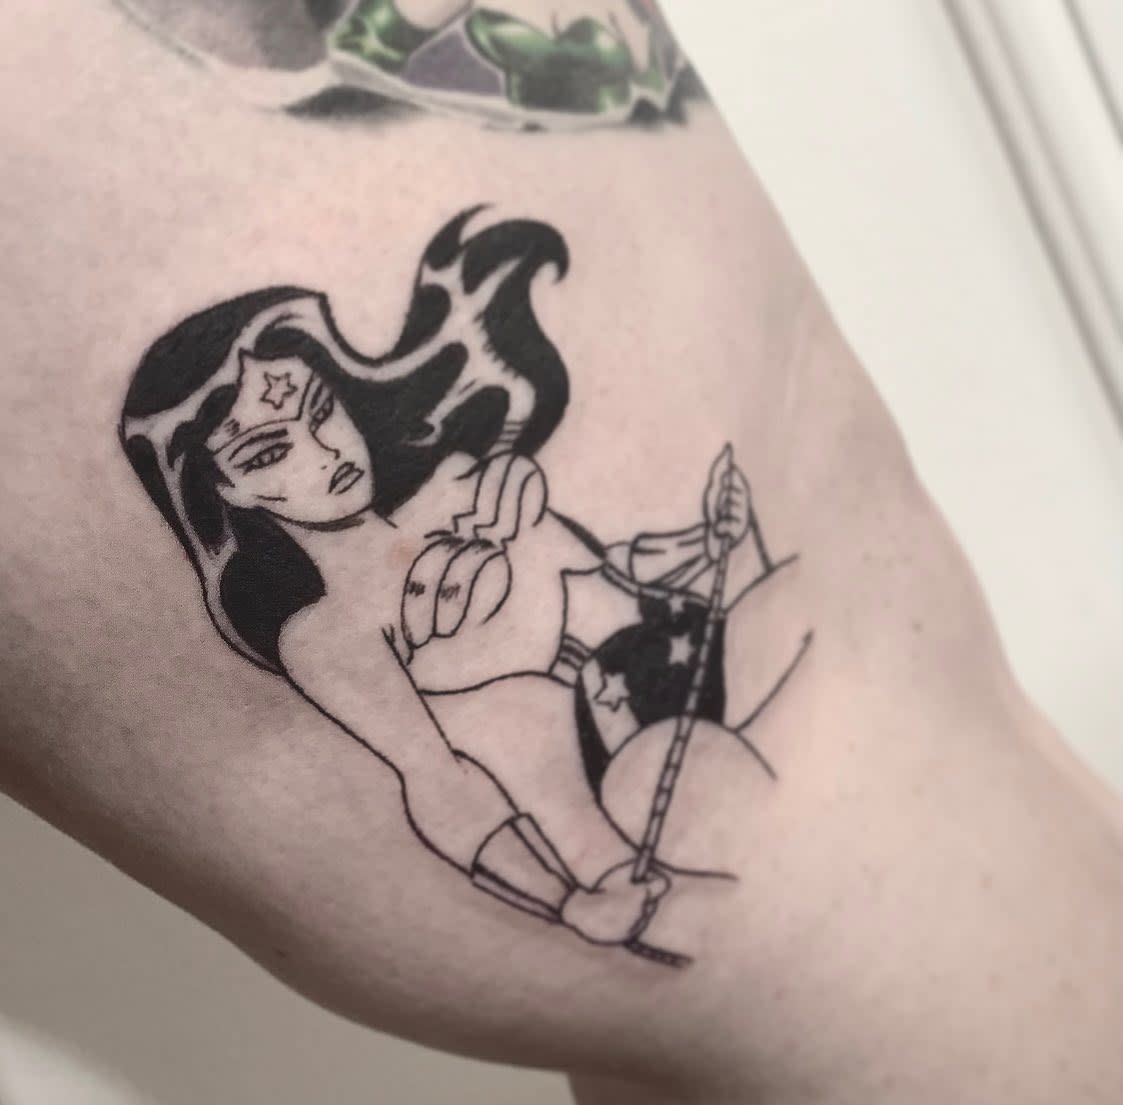 Comic Wonder Woman Tattoo -kathleensanders